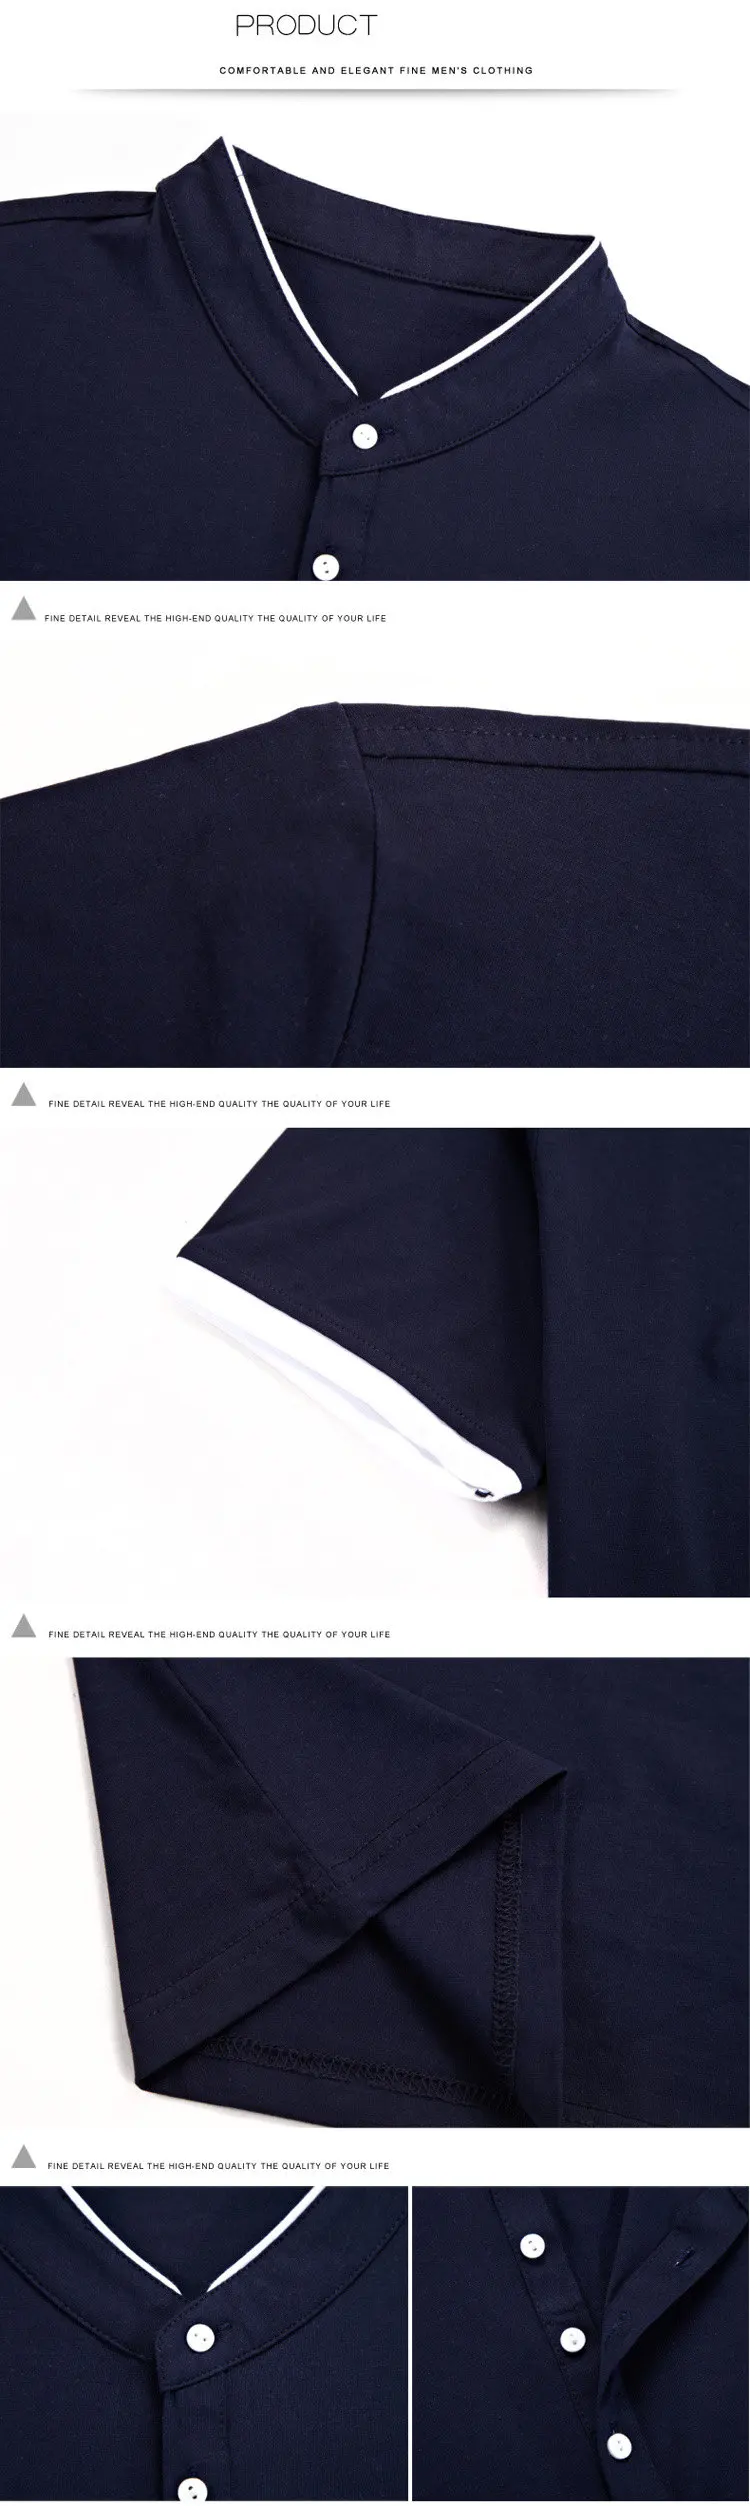 MRMT новая брендовая мужская Тонкая рубашка поло с короткими рукавами летние рубашки поло сплошной цвет хлопок воротник рубашки